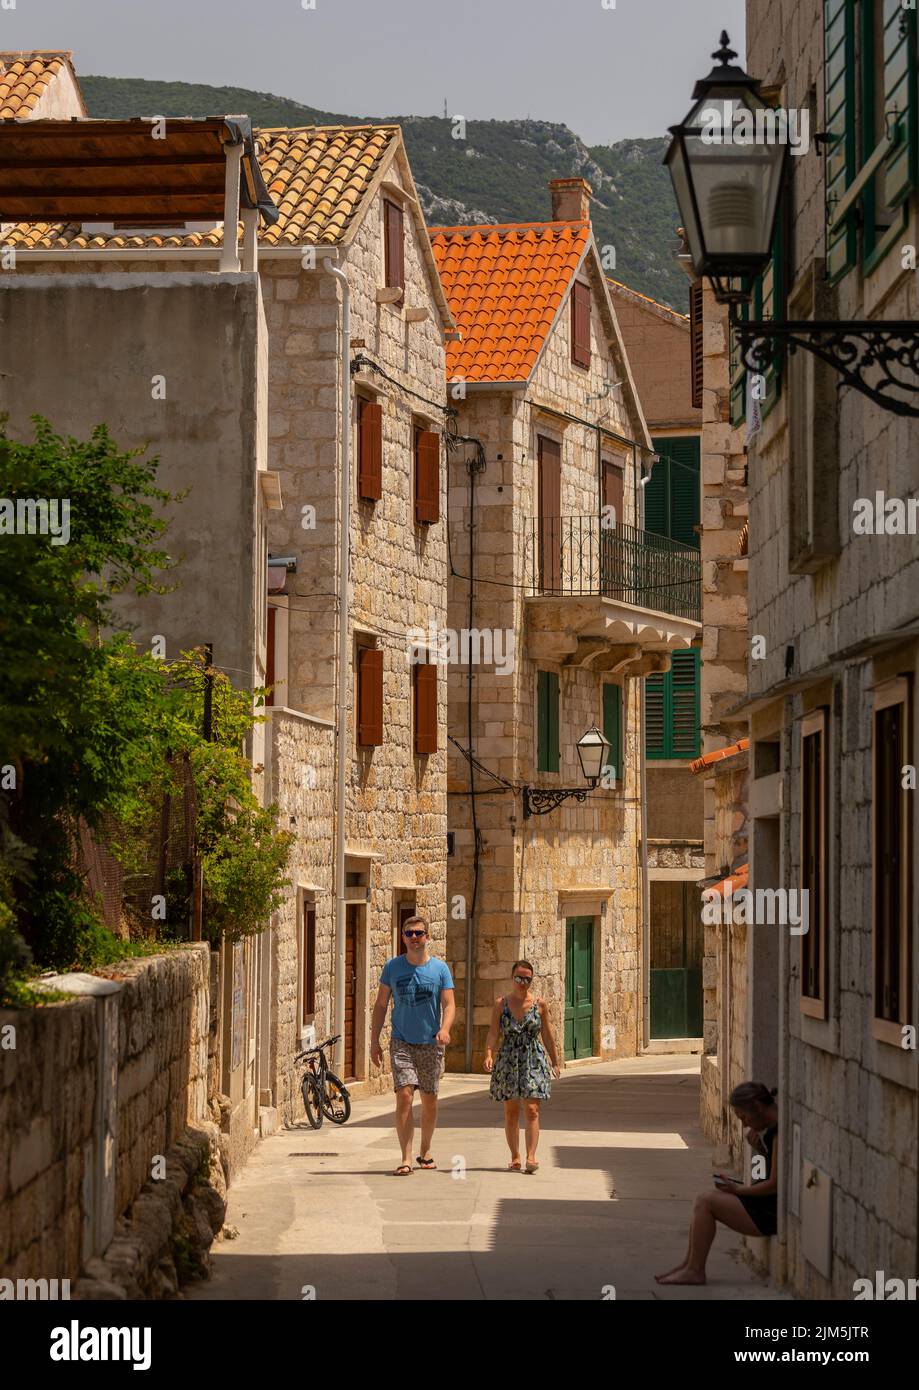 KOMIZA, CROATIA, EUROPE - Coastal town of Komiza, on the island of Vis, in the Adriatic Sea. Stock Photo